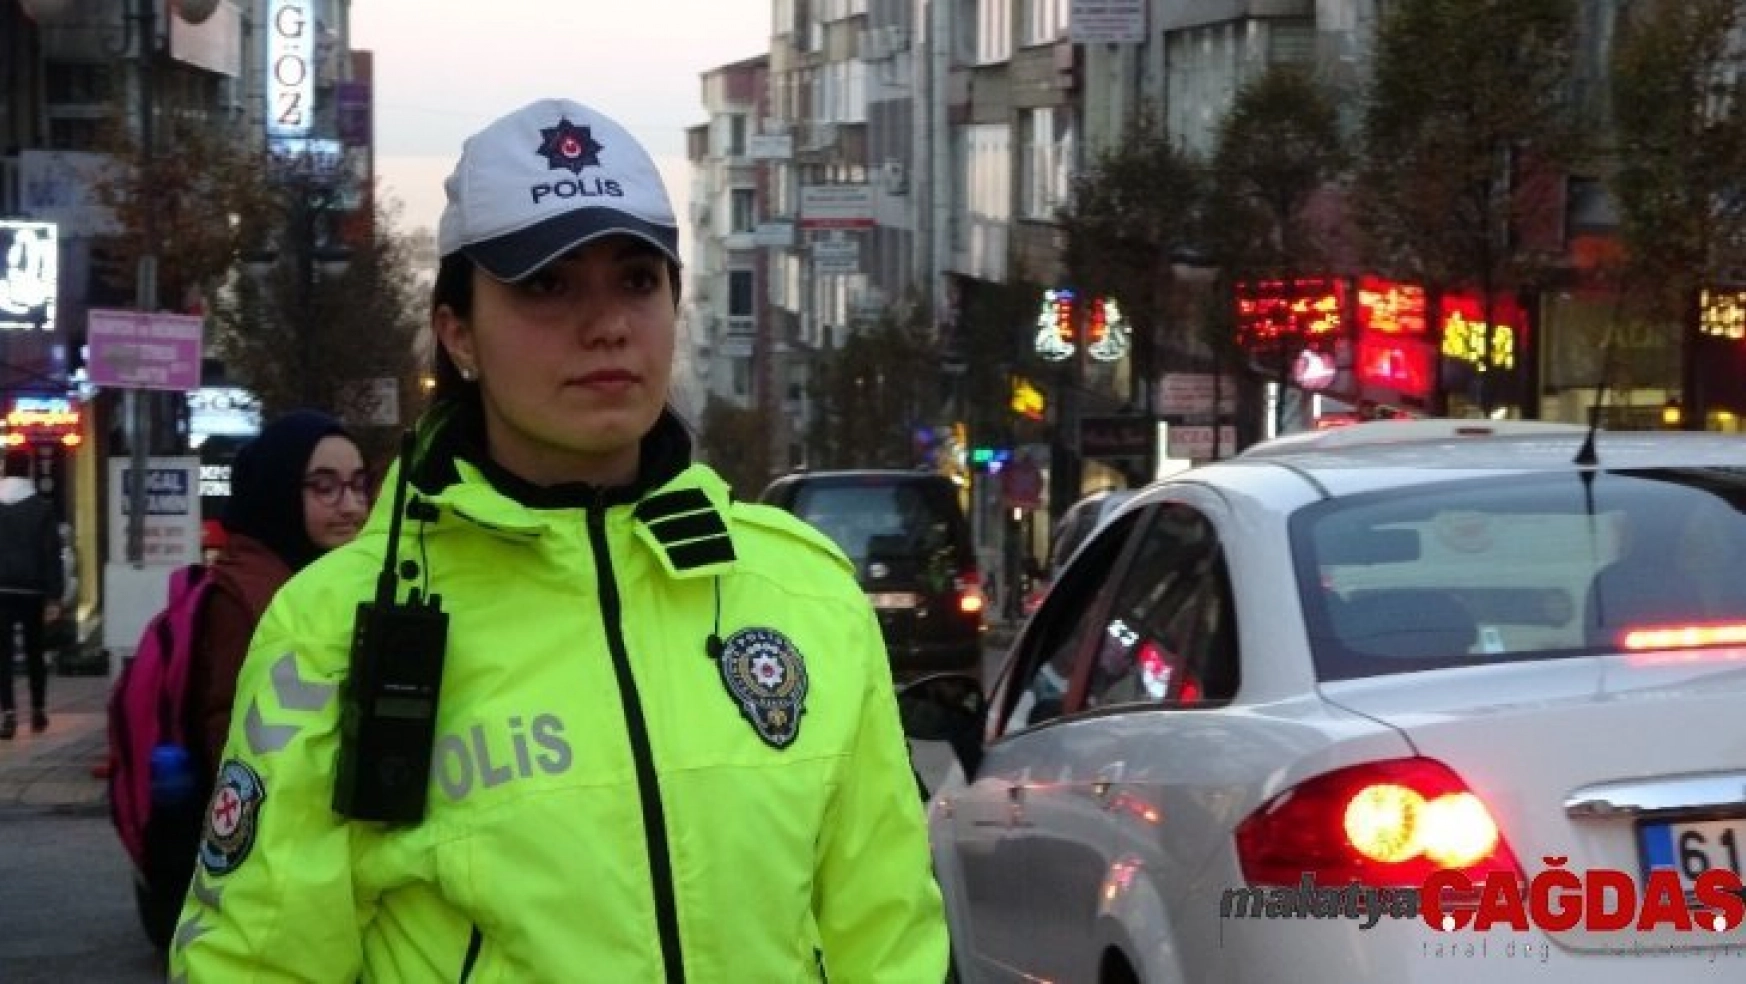 Abla-kardeş aynı şehirde trafik polisi olarak görev yapıyor